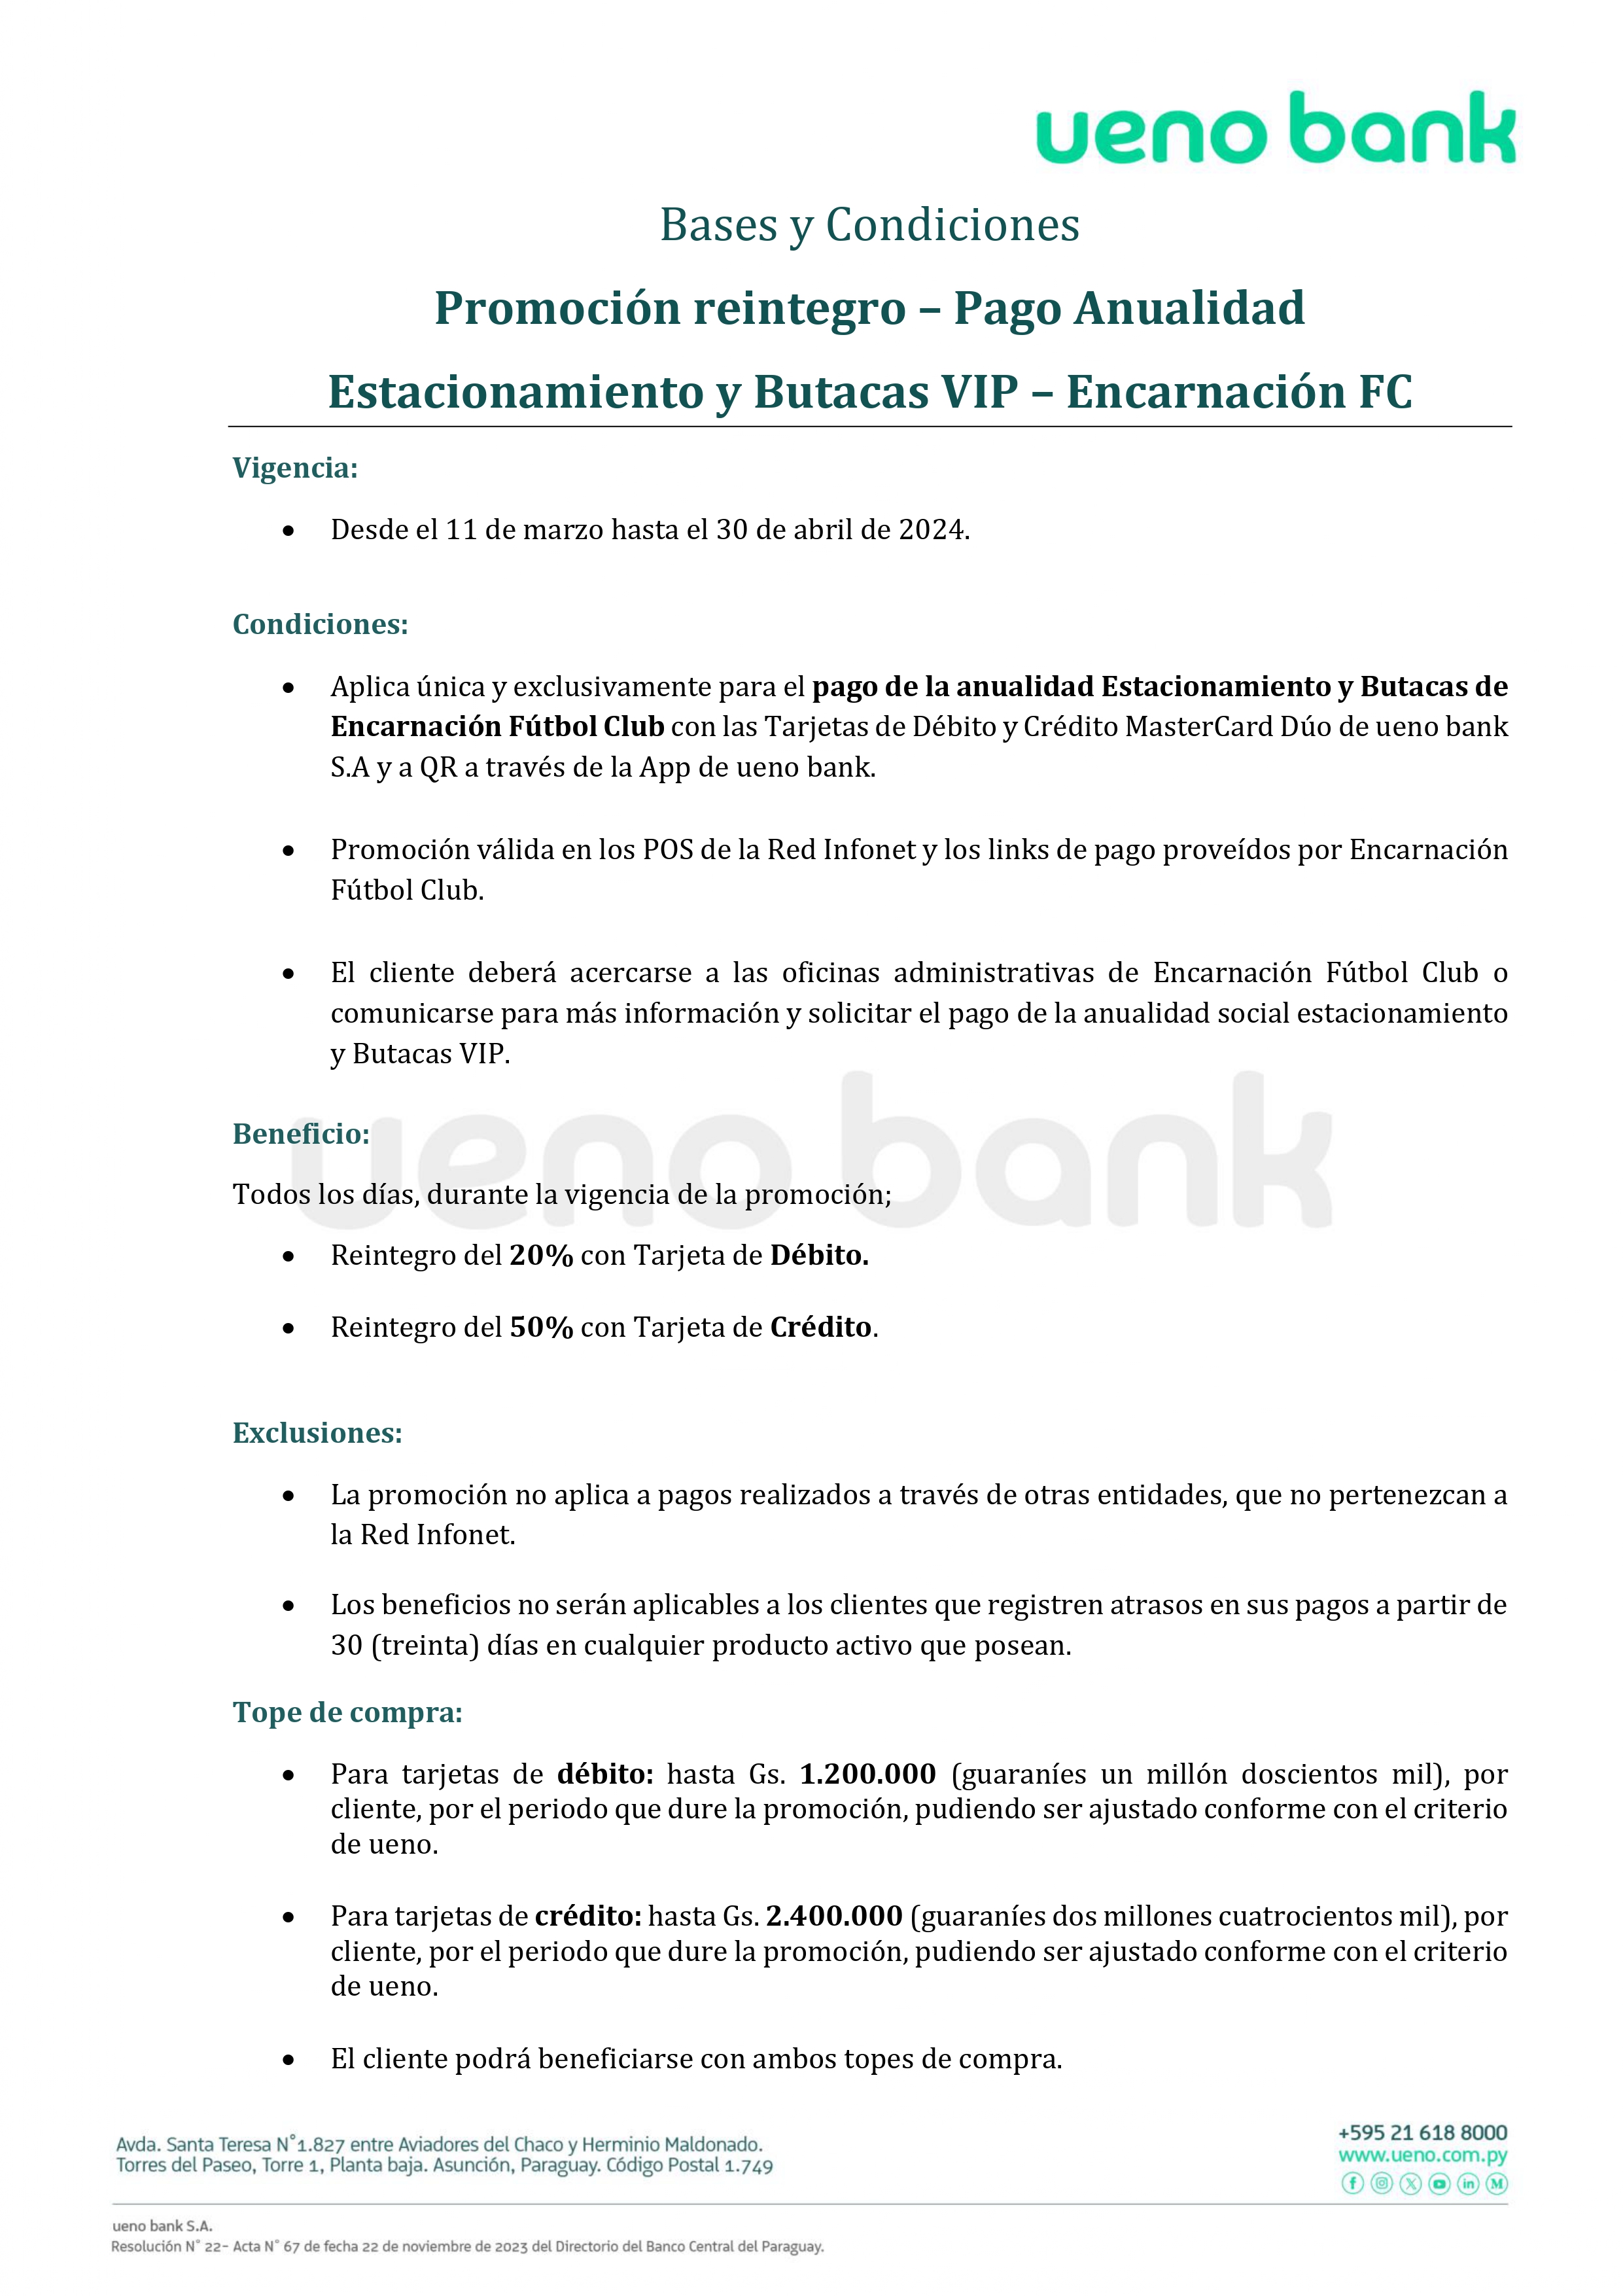 ByC - Pago de Anualidad Encarnación FC Estacionamiento y Butacas VIP (1)_page-0001.jpg